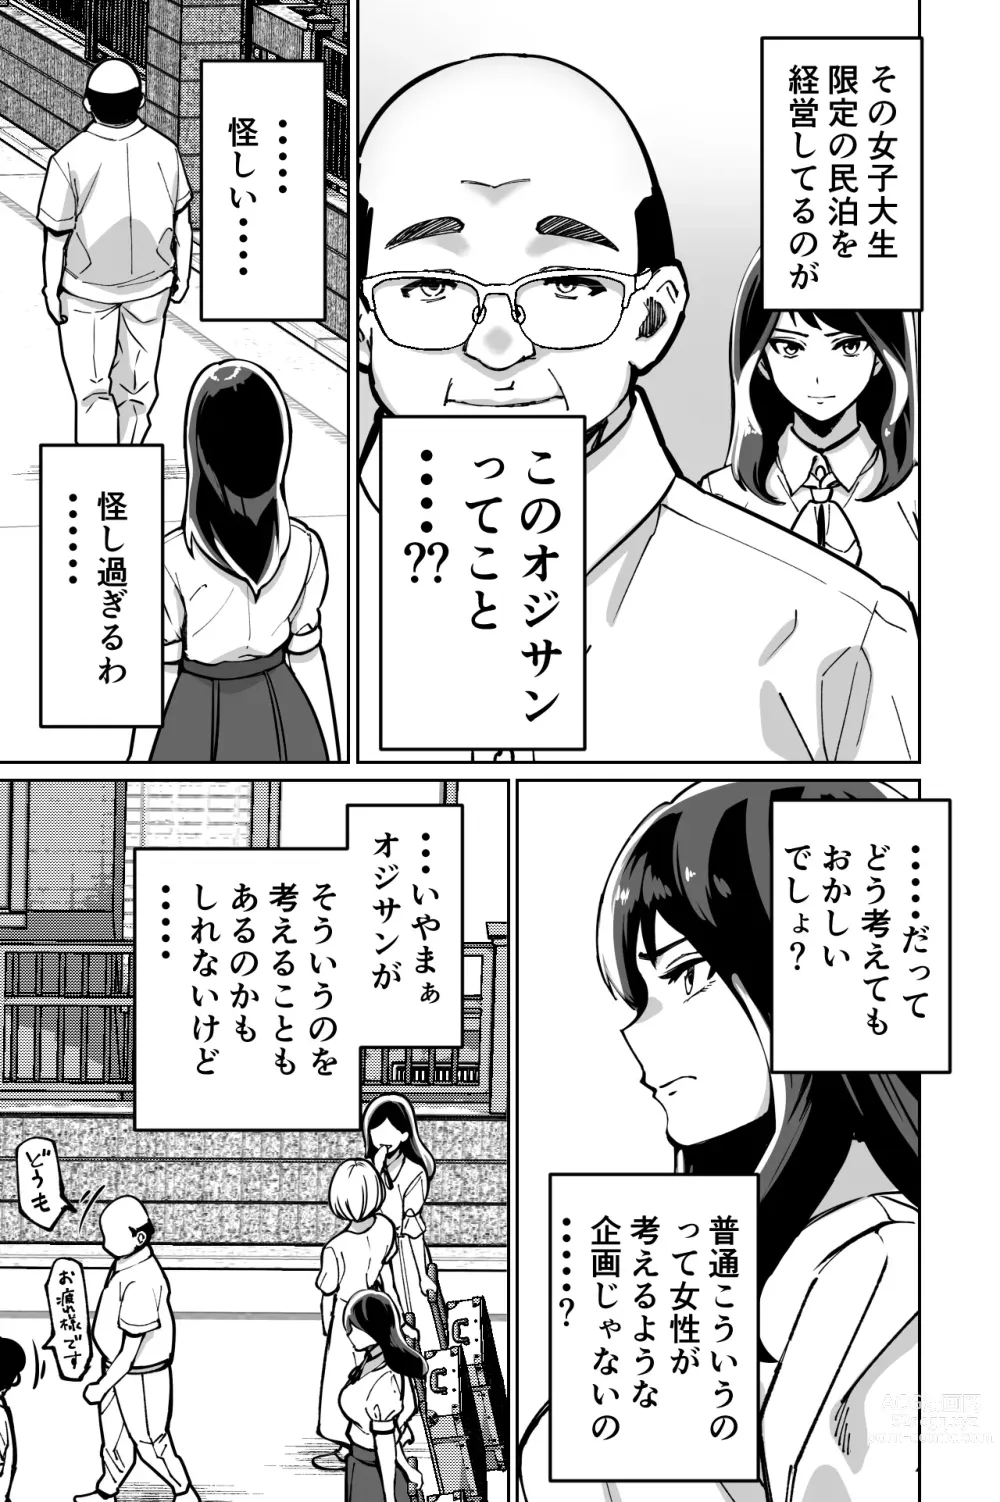 Page 9 of doujinshi Minpaku ~Ojou-sama-tachi wa Minpaku Keieisha no Wana ni Ochiru~